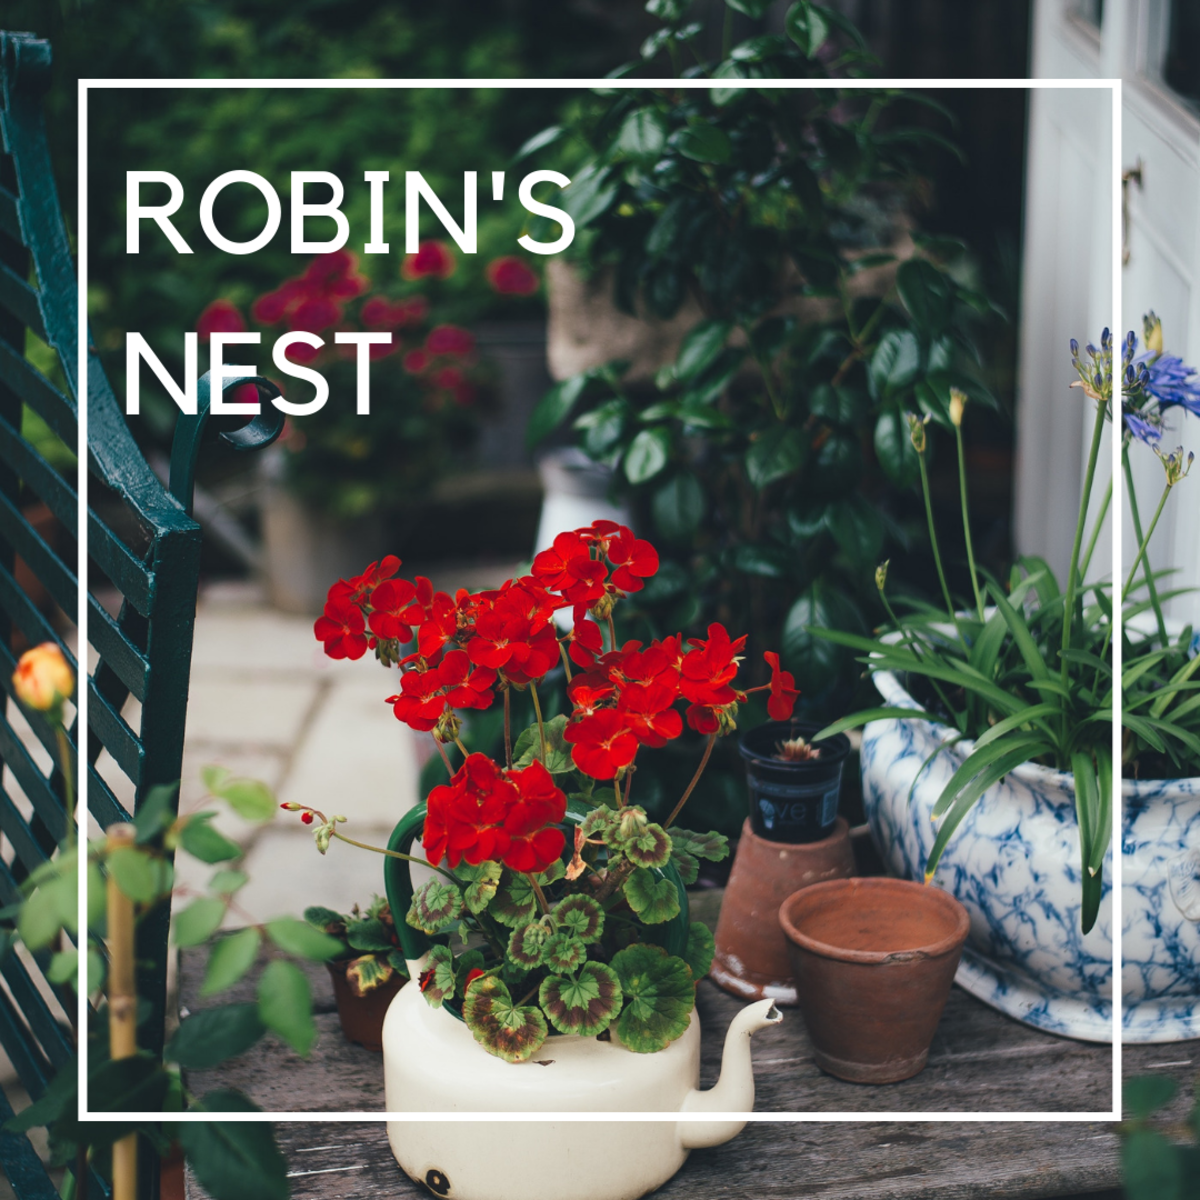 Robin's Nest